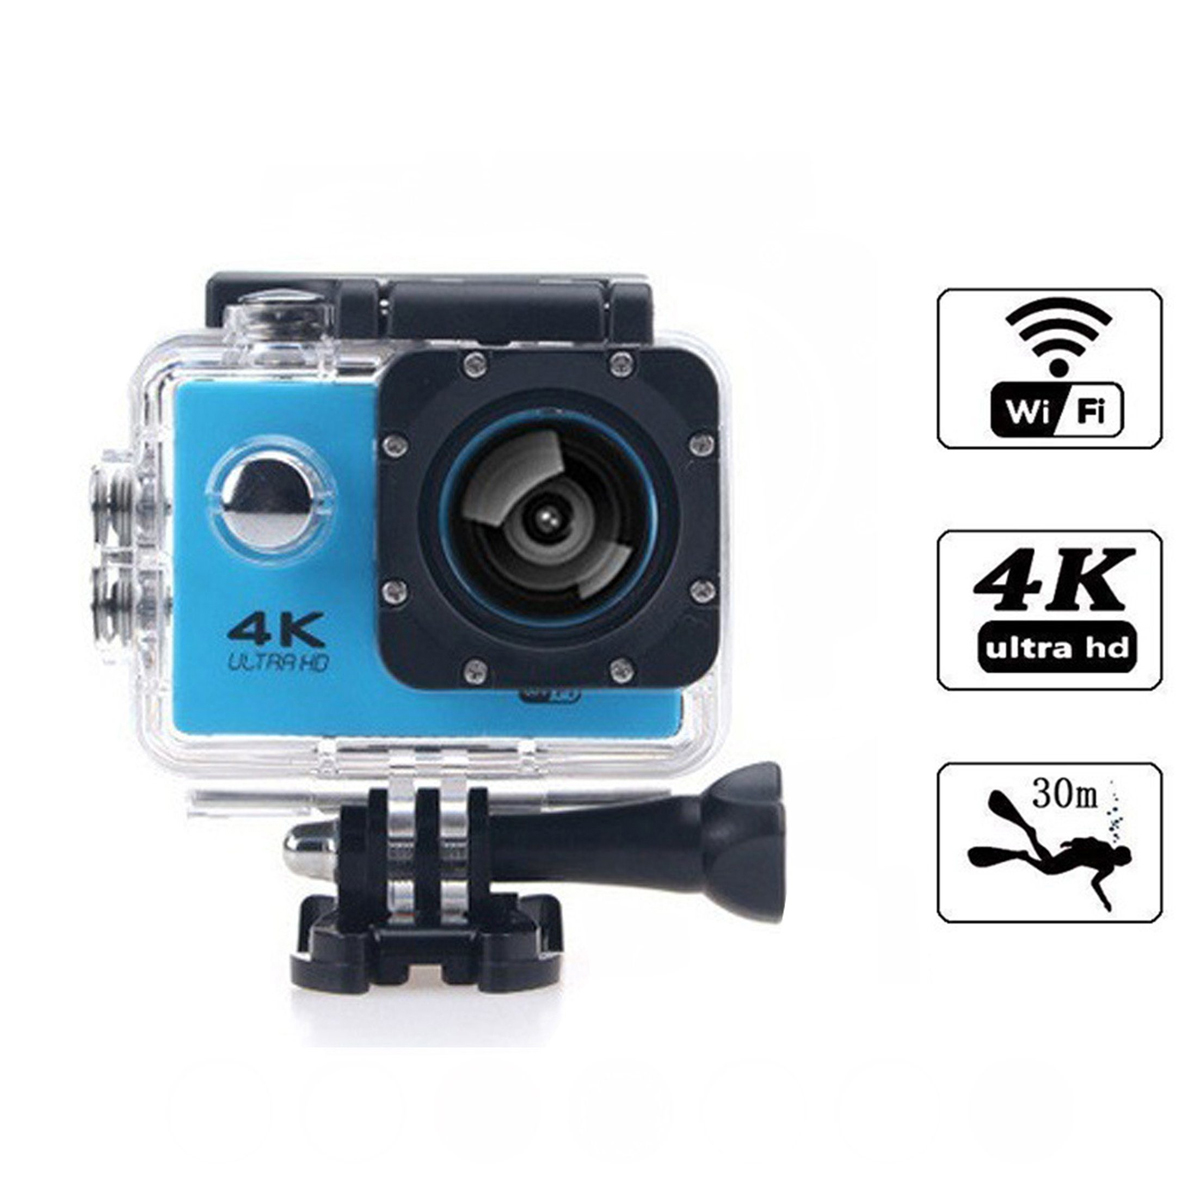 wasserdicht,WiFi-Synchronisation,Unterwasserkameras KINSI Action-Kamera HD-Kameras,4K-Sportkameras,30m